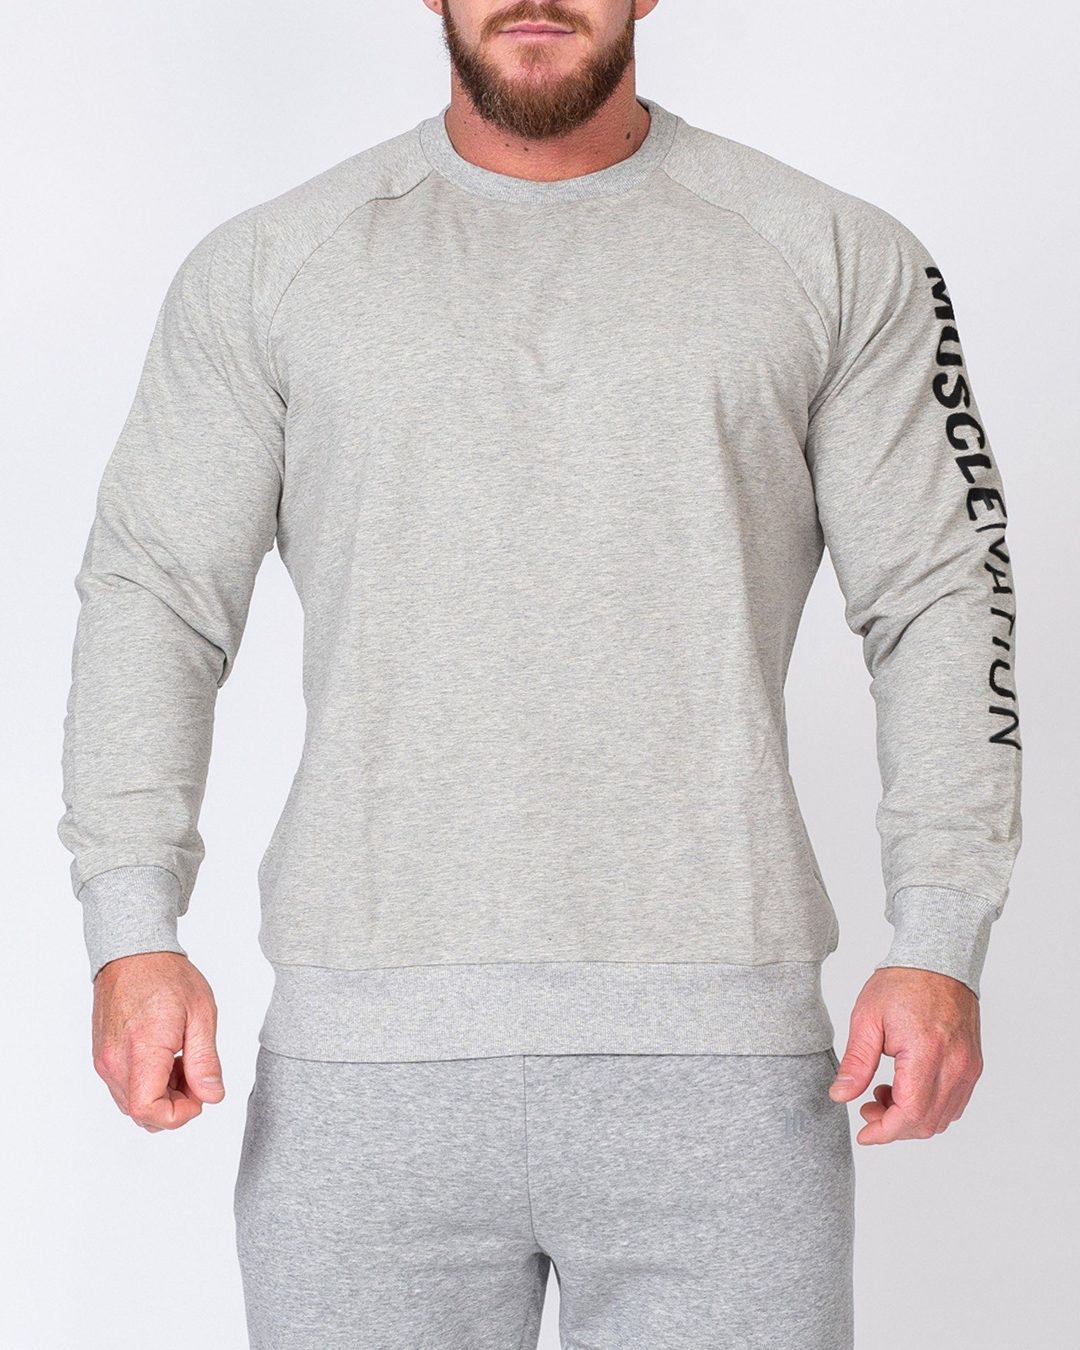 musclenation Mens Lightweight Long Sleeve - Grey